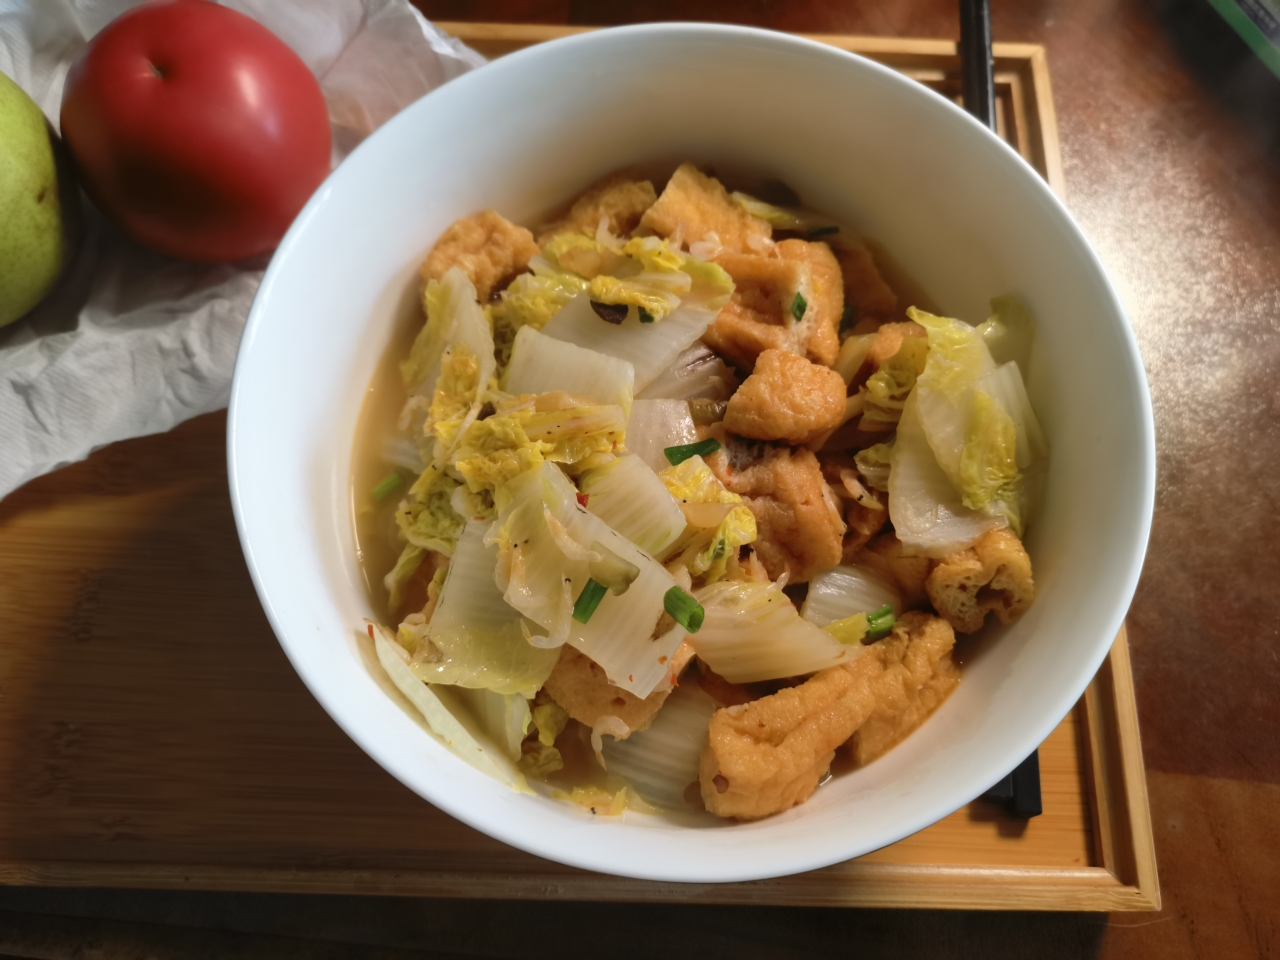 油豆腐炖白菜